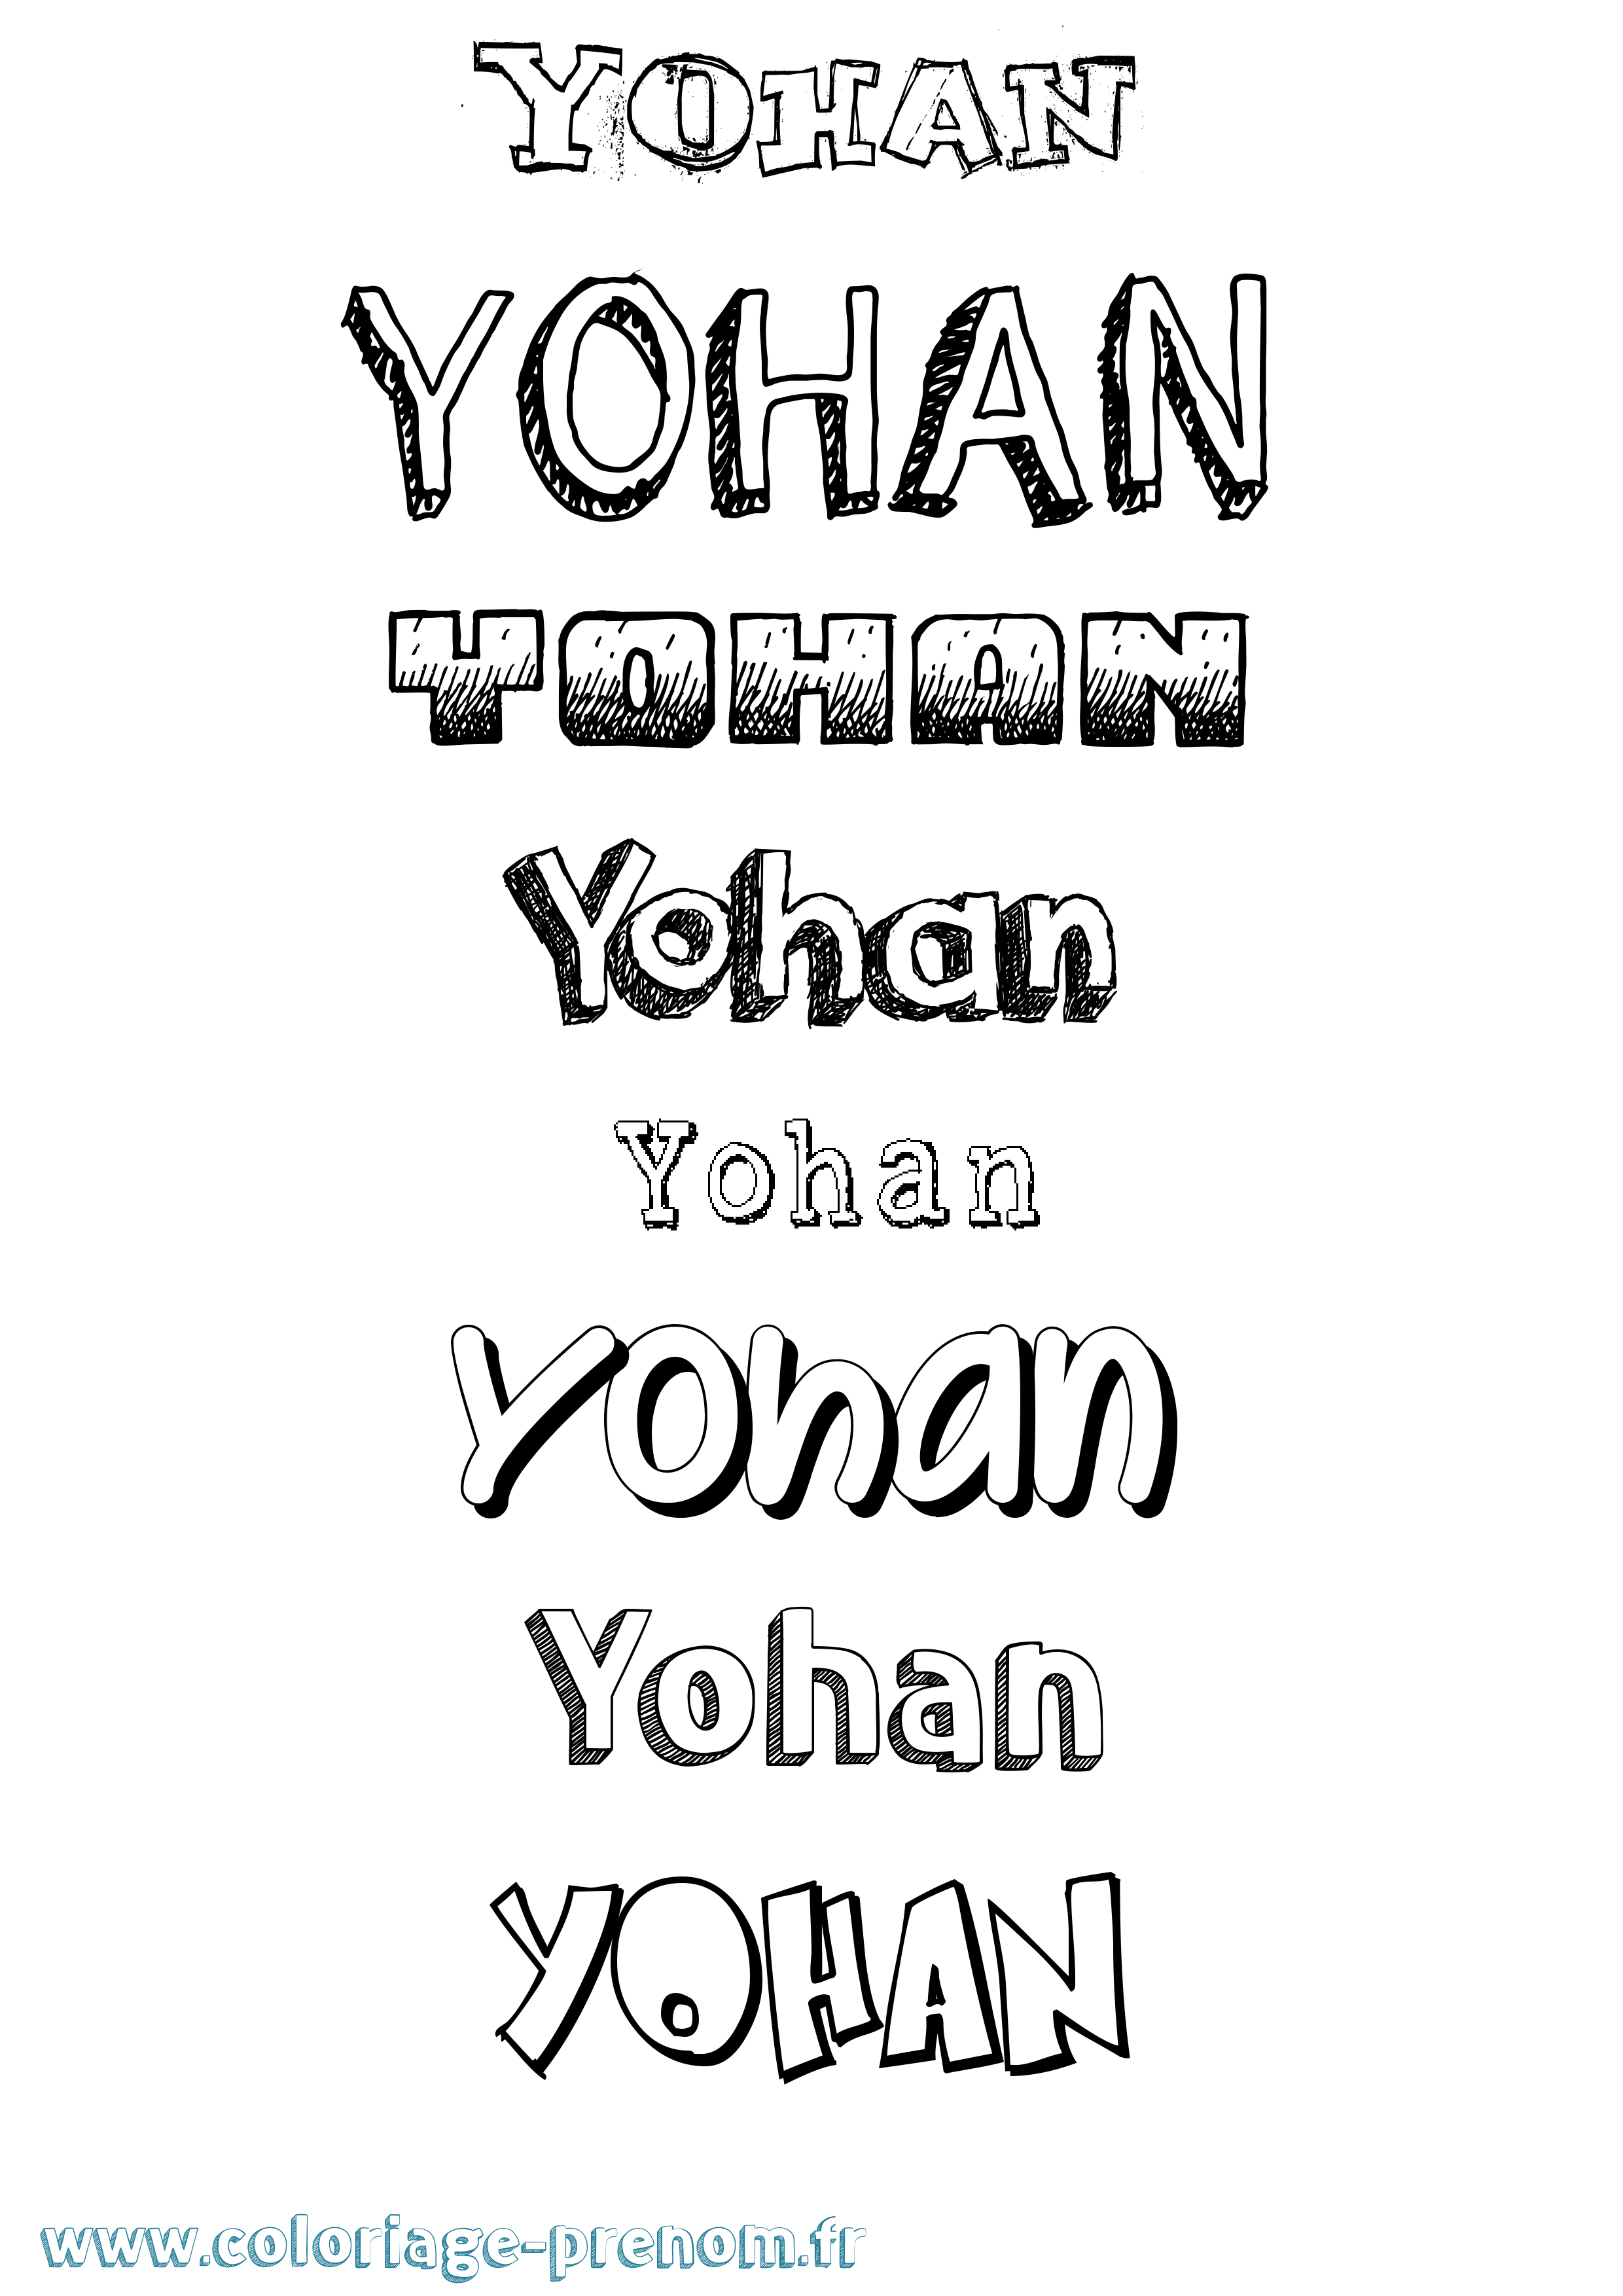 Coloriage prénom Yohan